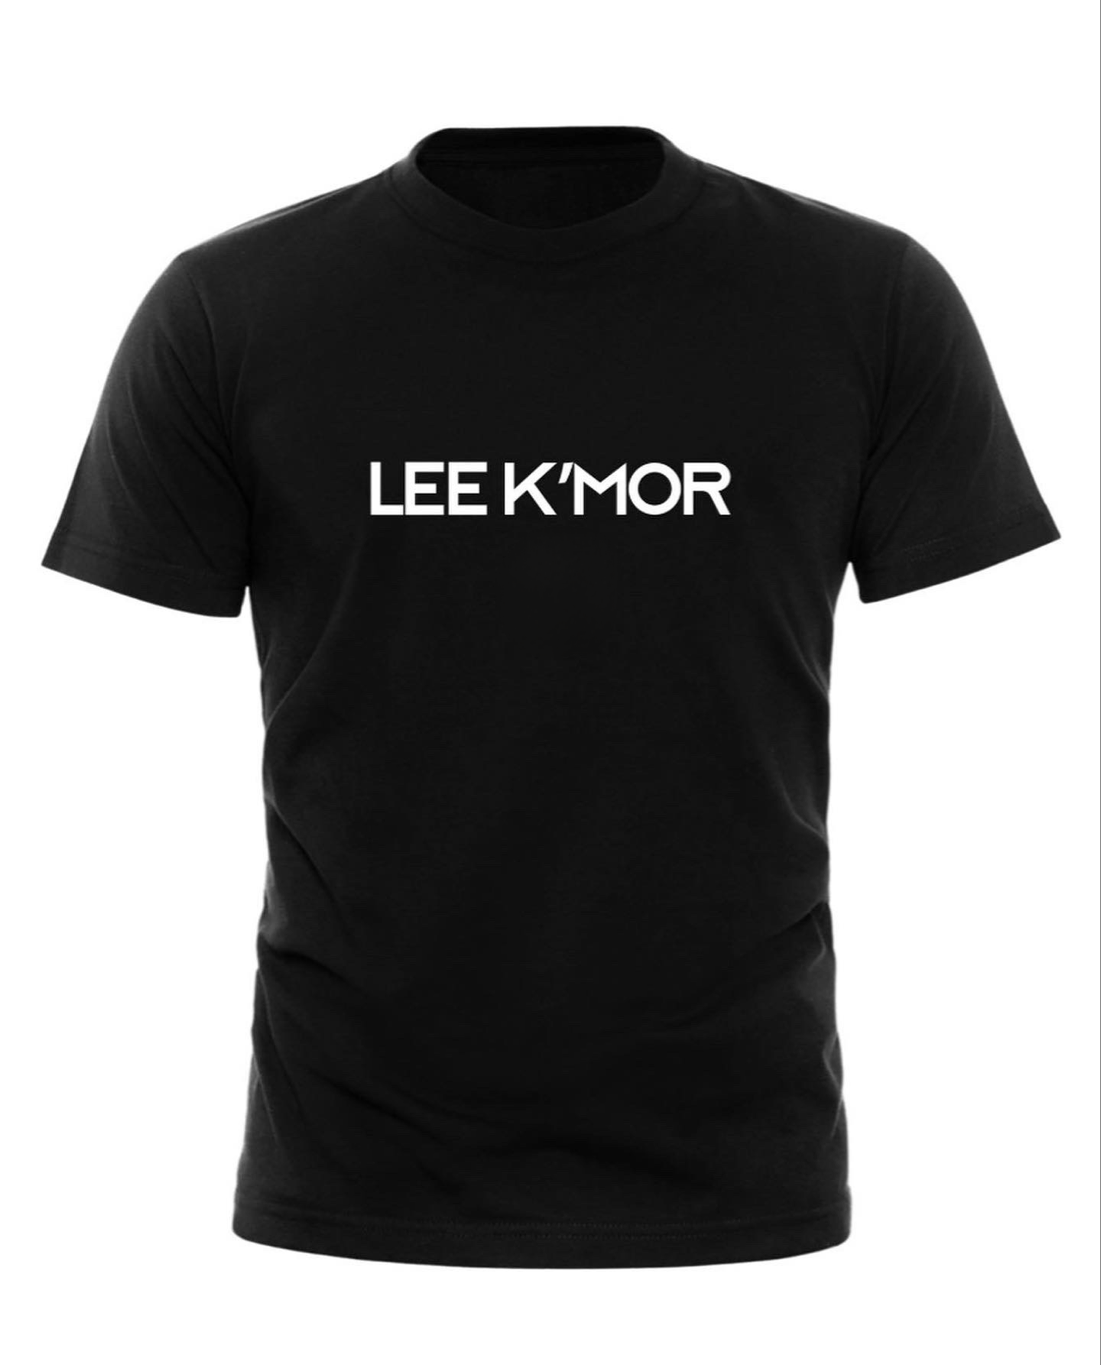 Lee Kmor logo T-Shirt